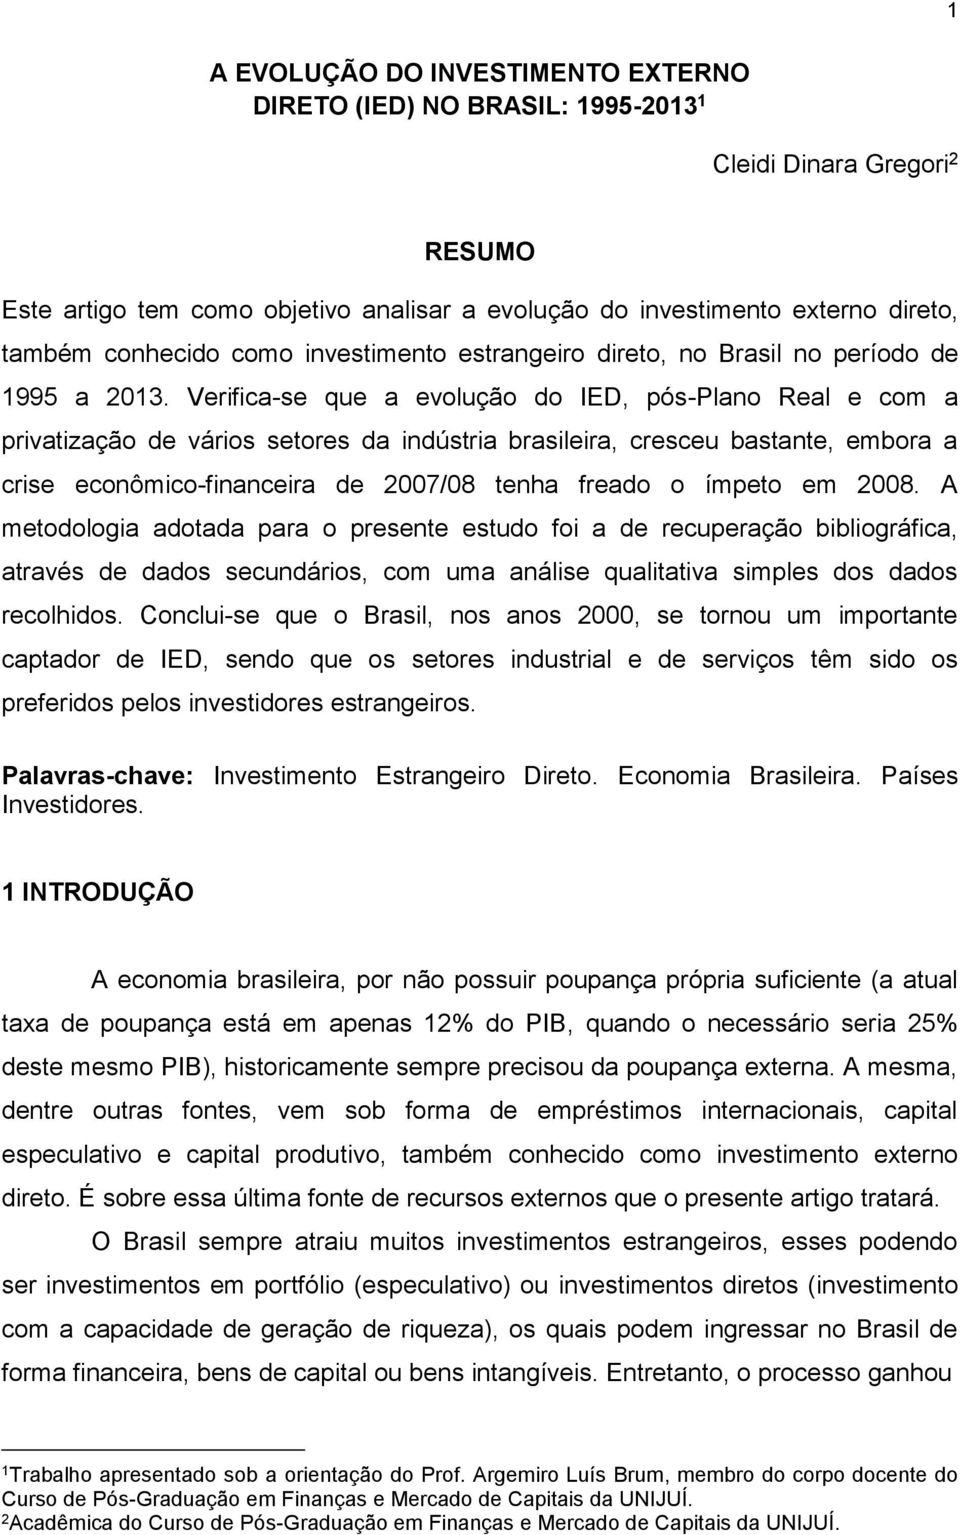 Verifica-se que a evolução do IED, pós-plano Real e com a privatização de vários setores da indústria brasileira, cresceu bastante, embora a crise econômico-financeira de 2007/08 tenha freado o